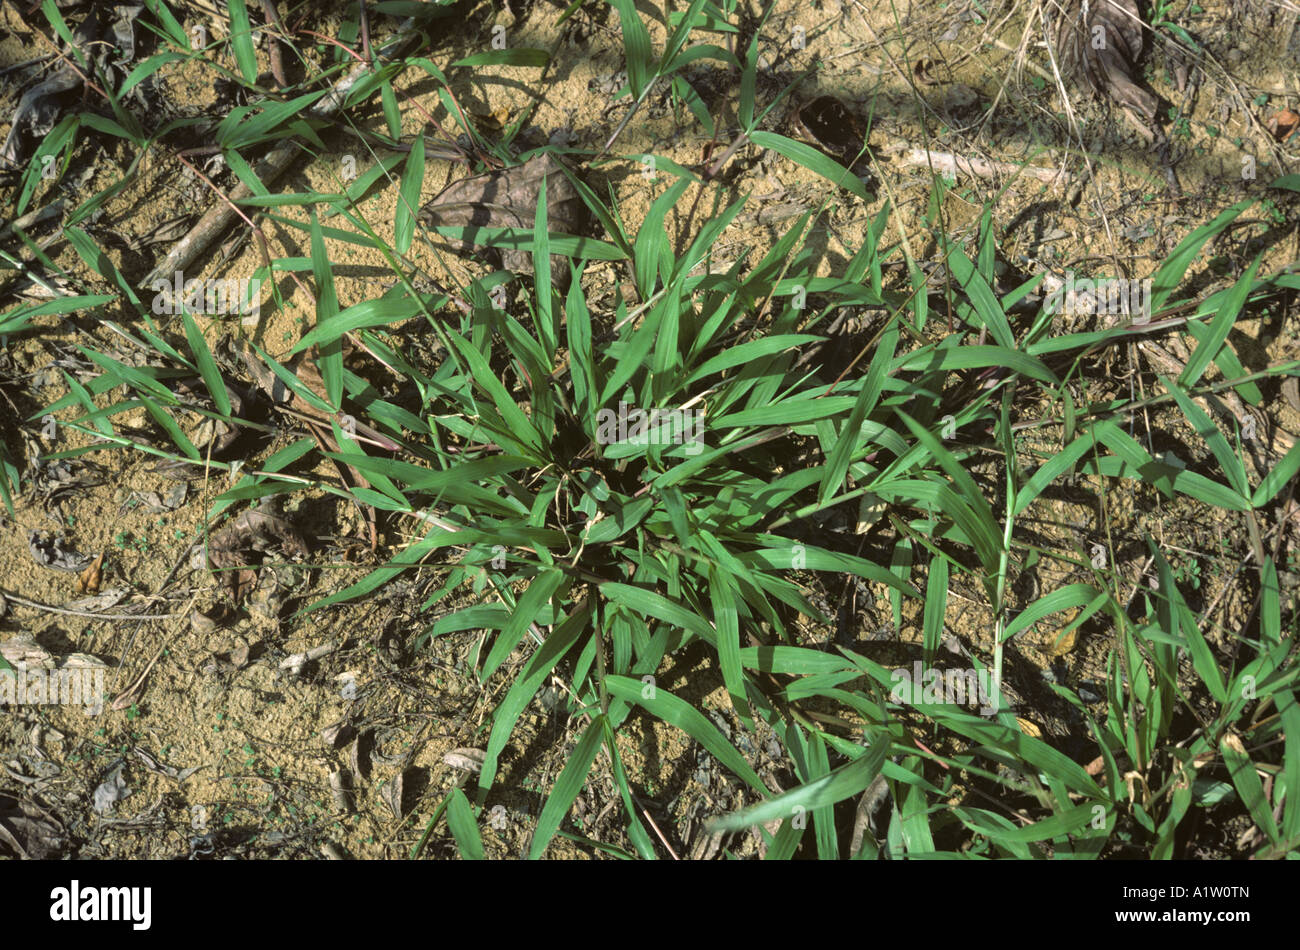 Buffalo grass Paspalum conjugatum prostrate grass weed Stock Photo